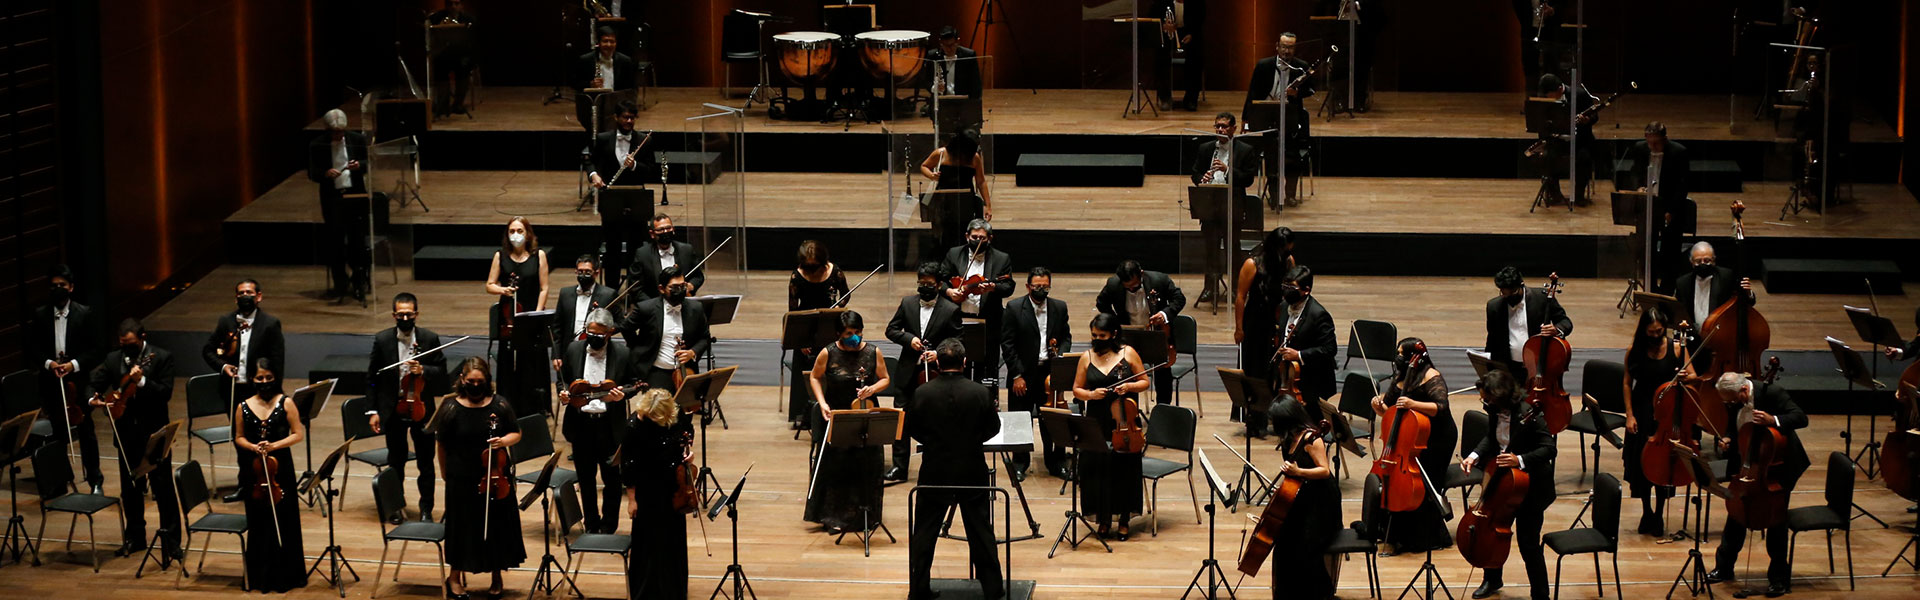 Orquesta Sinfónica Nacional del Perú presenta el concierto Dvořák en el Gran Teatro Nacional